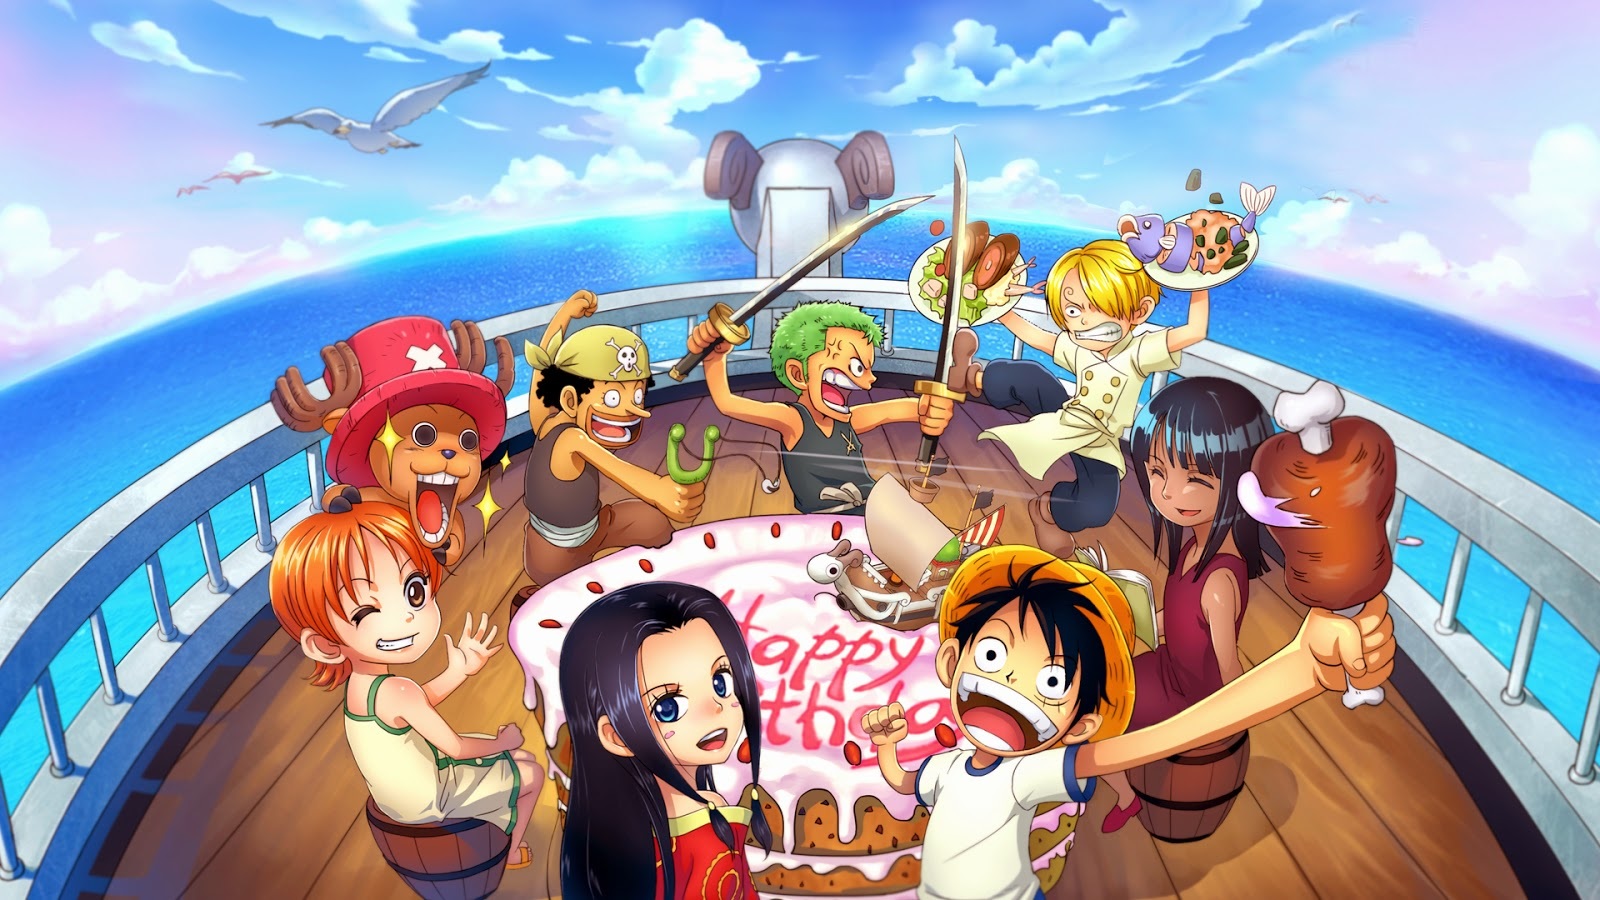 Bộ anime One Piece với những nhân vật đáng yêu, hấp dẫn và câu chuyện lôi cuốn sẽ đem lại cho bạn những giờ phút thư giãn tuyệt vời. Hãy thưởng thức hình ảnh anime One Piece và cùng trải nghiệm chuyến phiêu lưu tuyệt vời nhất trong cuộc đời bạn.